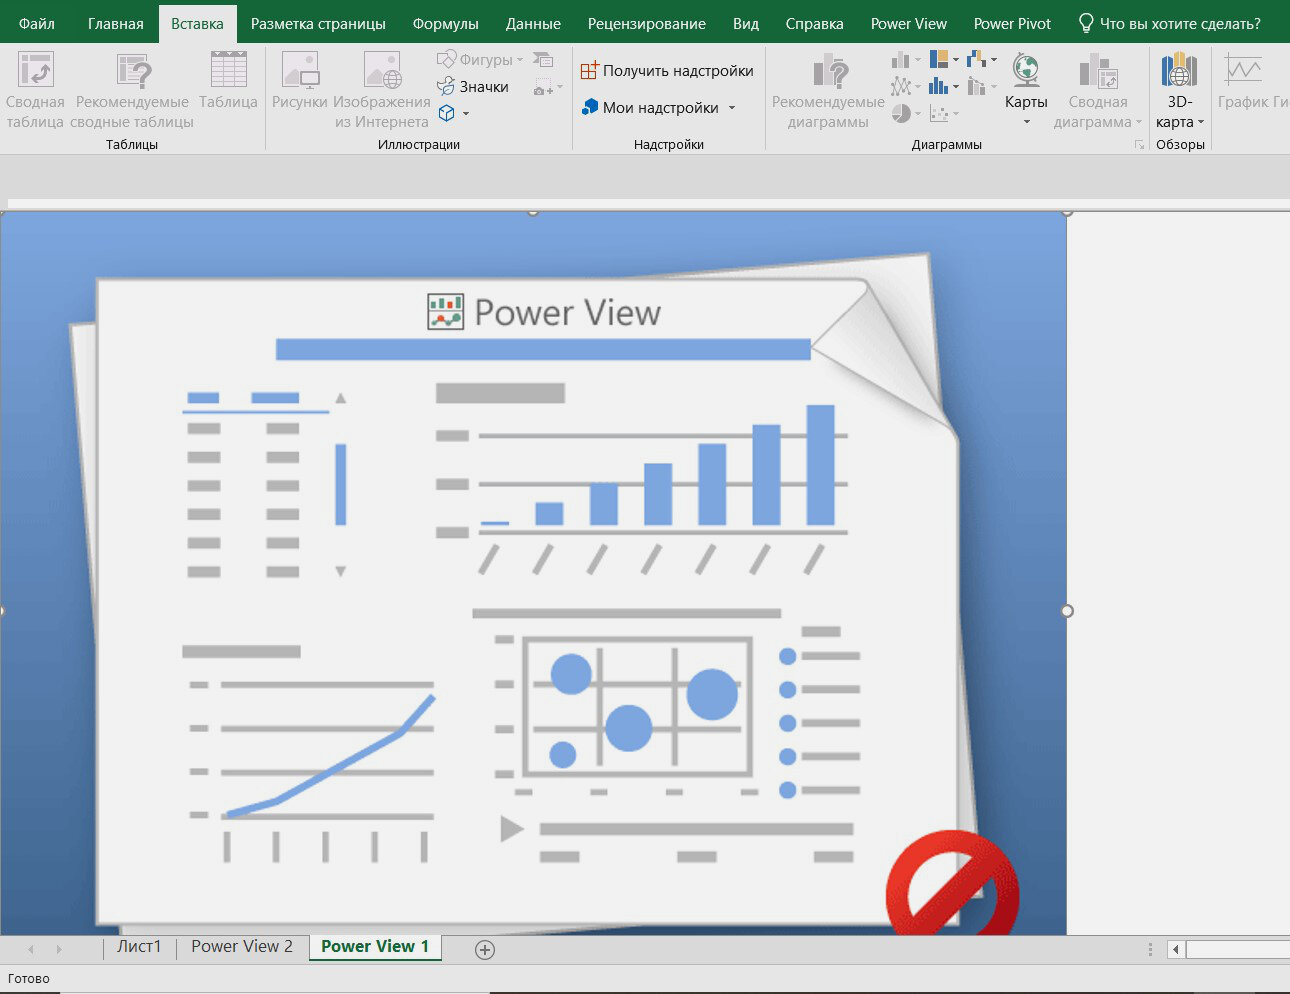 View power. Powerview. Power view. Excel Power view. Отчет Power view не работает.